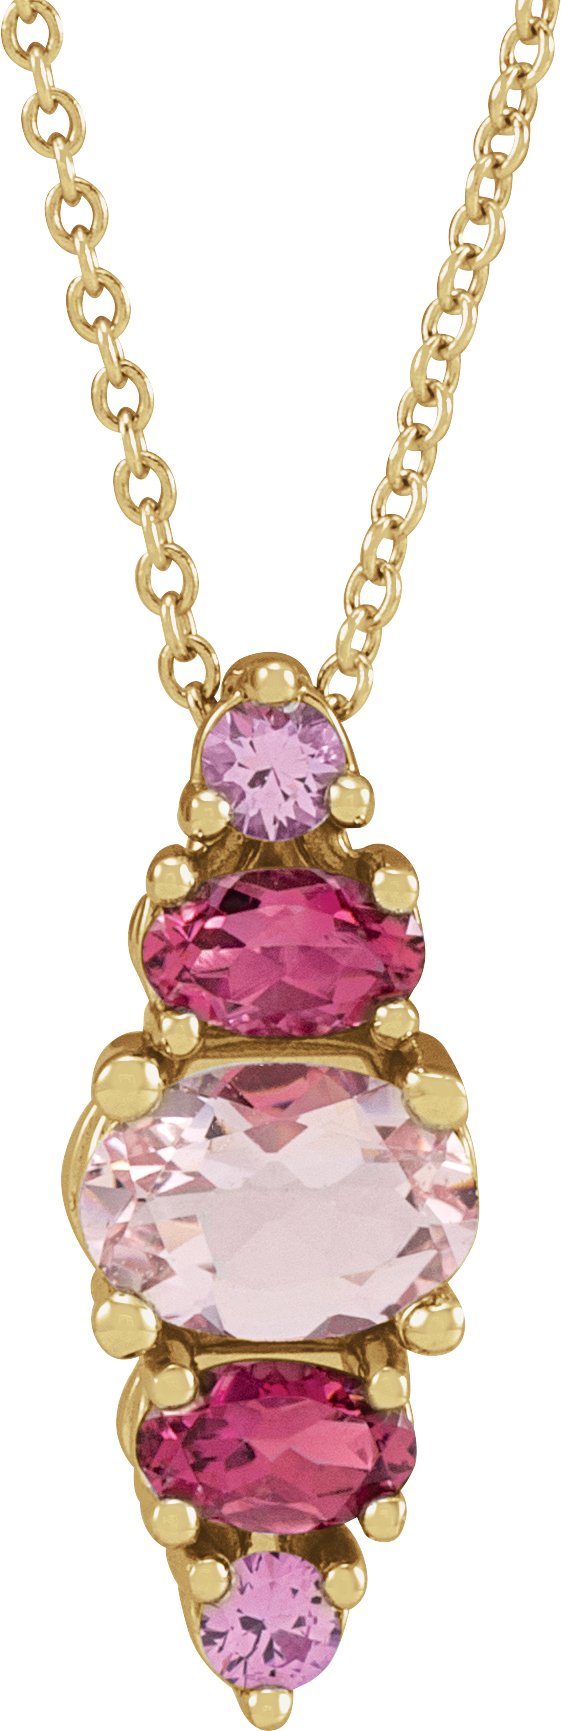 14K Yellow Natural Pink Multi-Gemstone Bar 16-18" Necklace